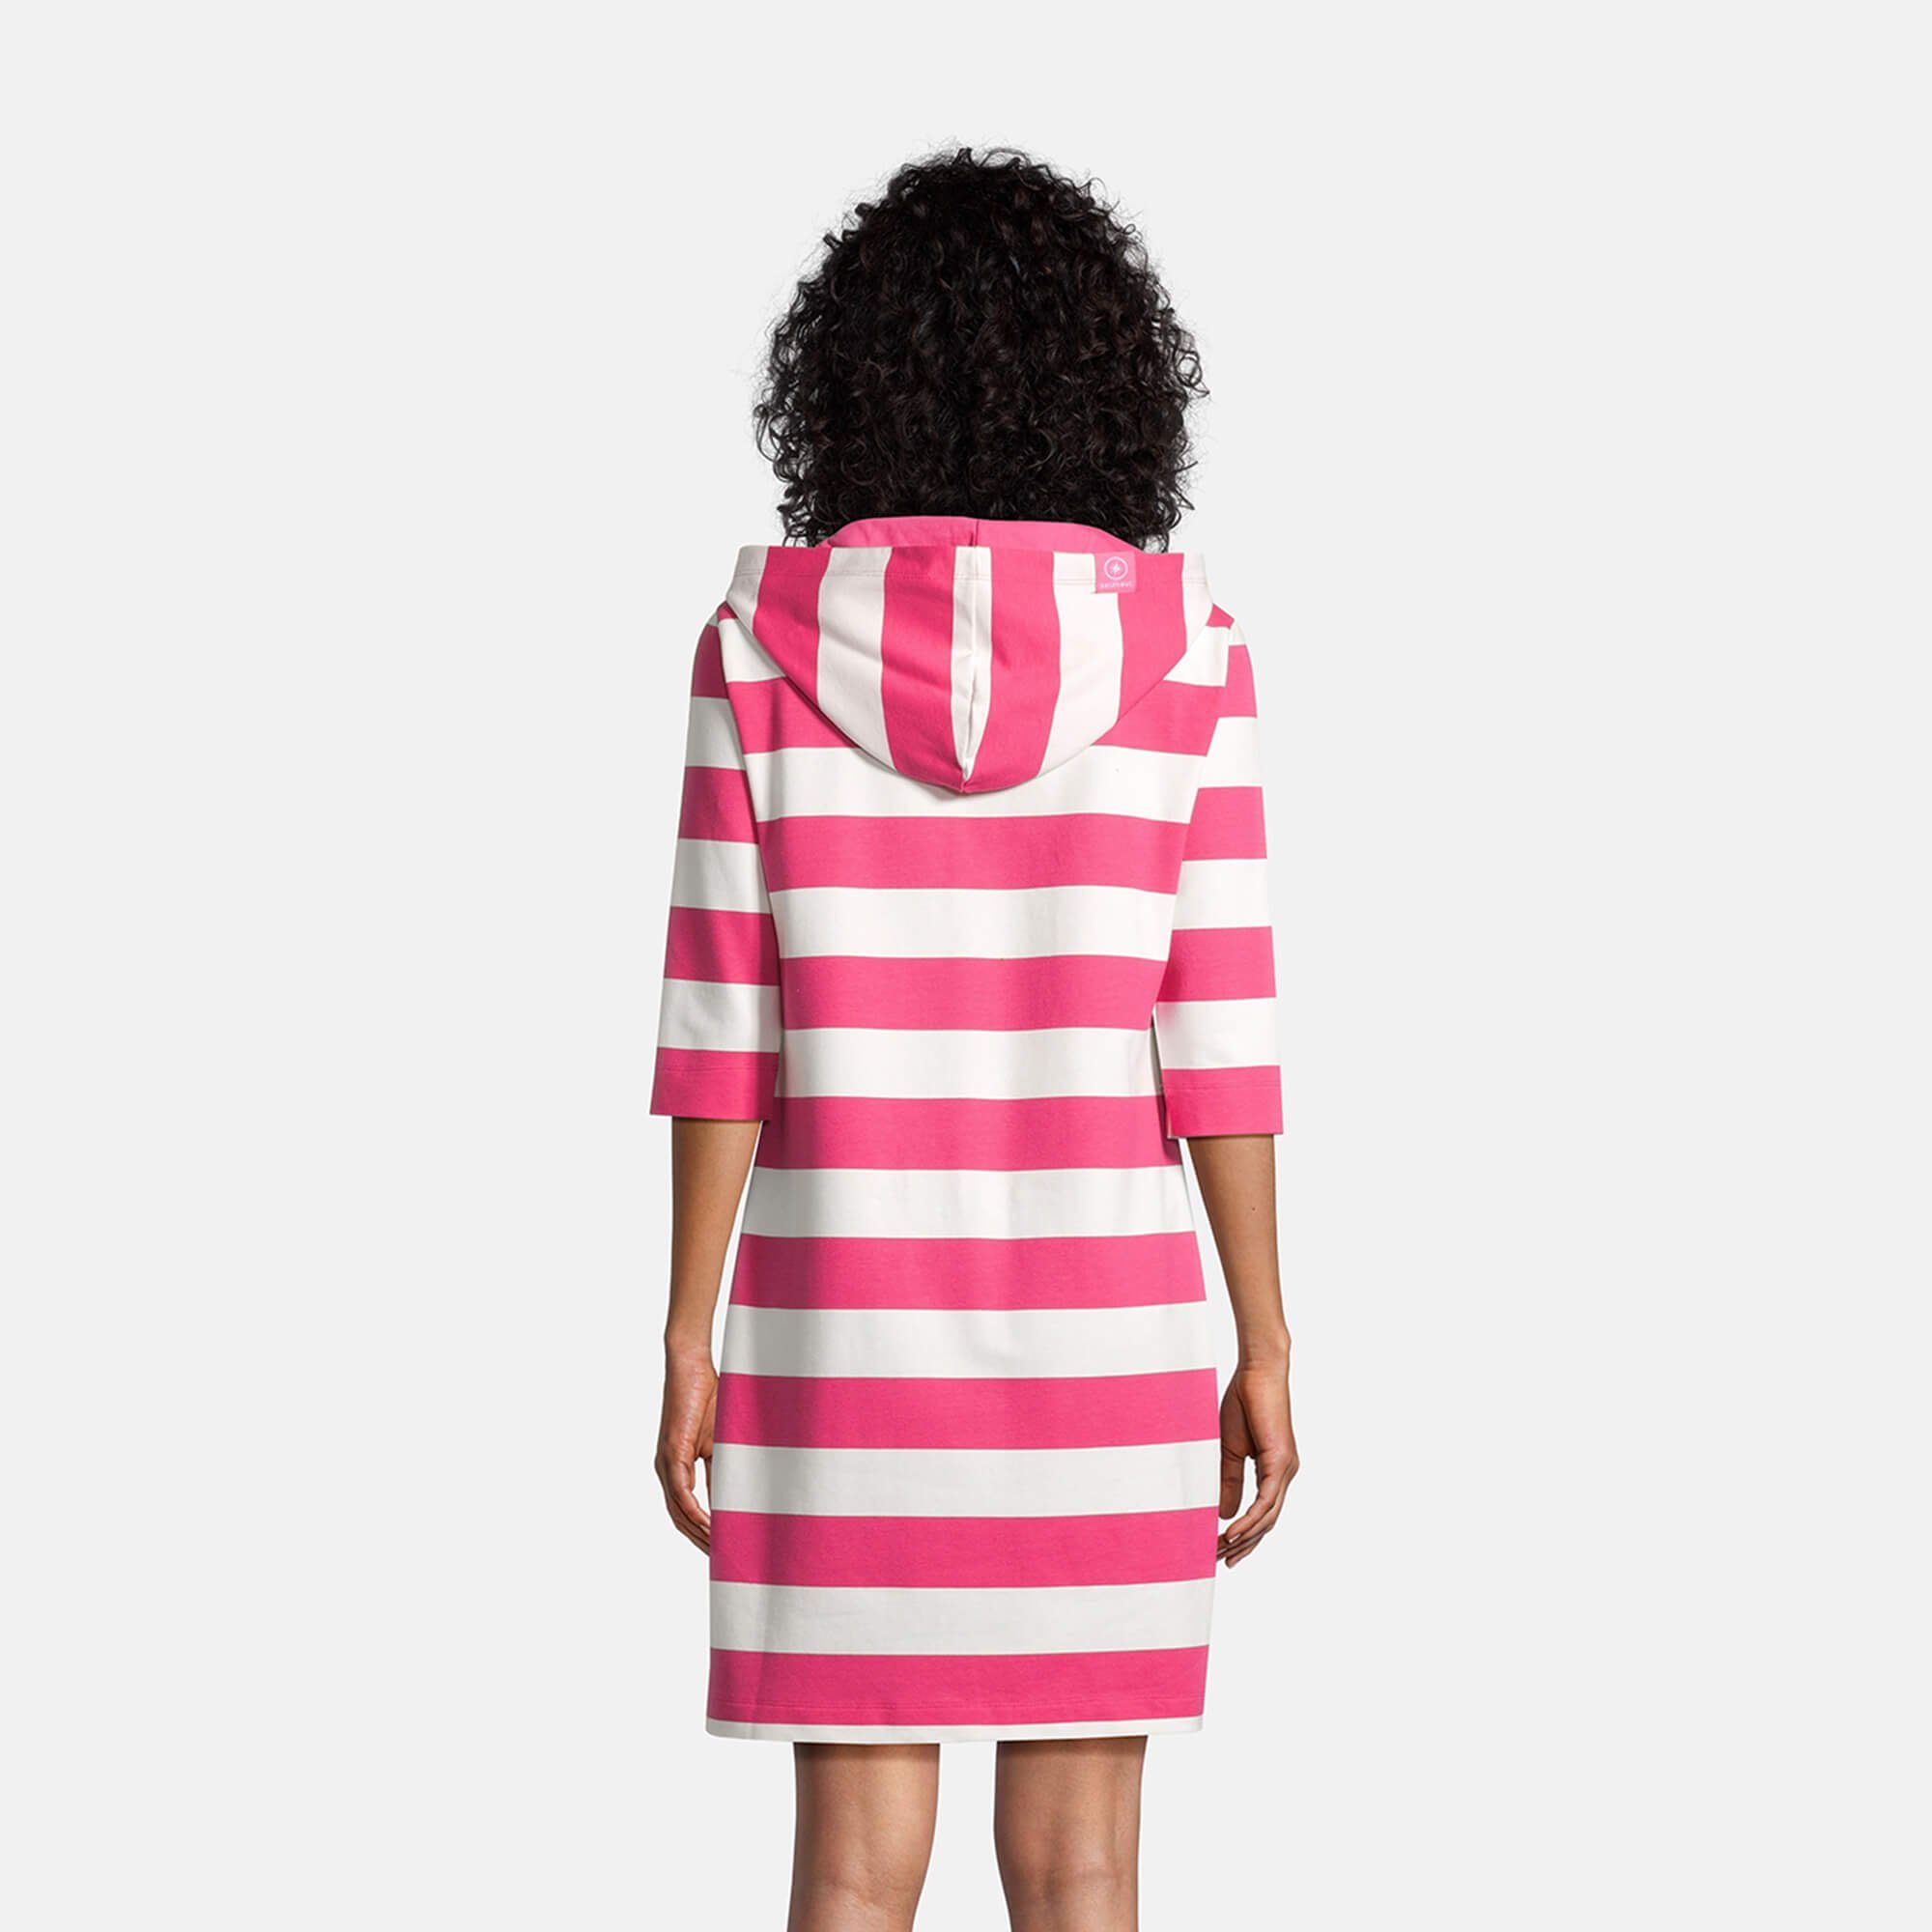 Hoodie-Kleid pink salzhaut Löövstick Block-Streifen / offwhite Shirtkleid 3/4-Arm Kapuzenkleid Damen